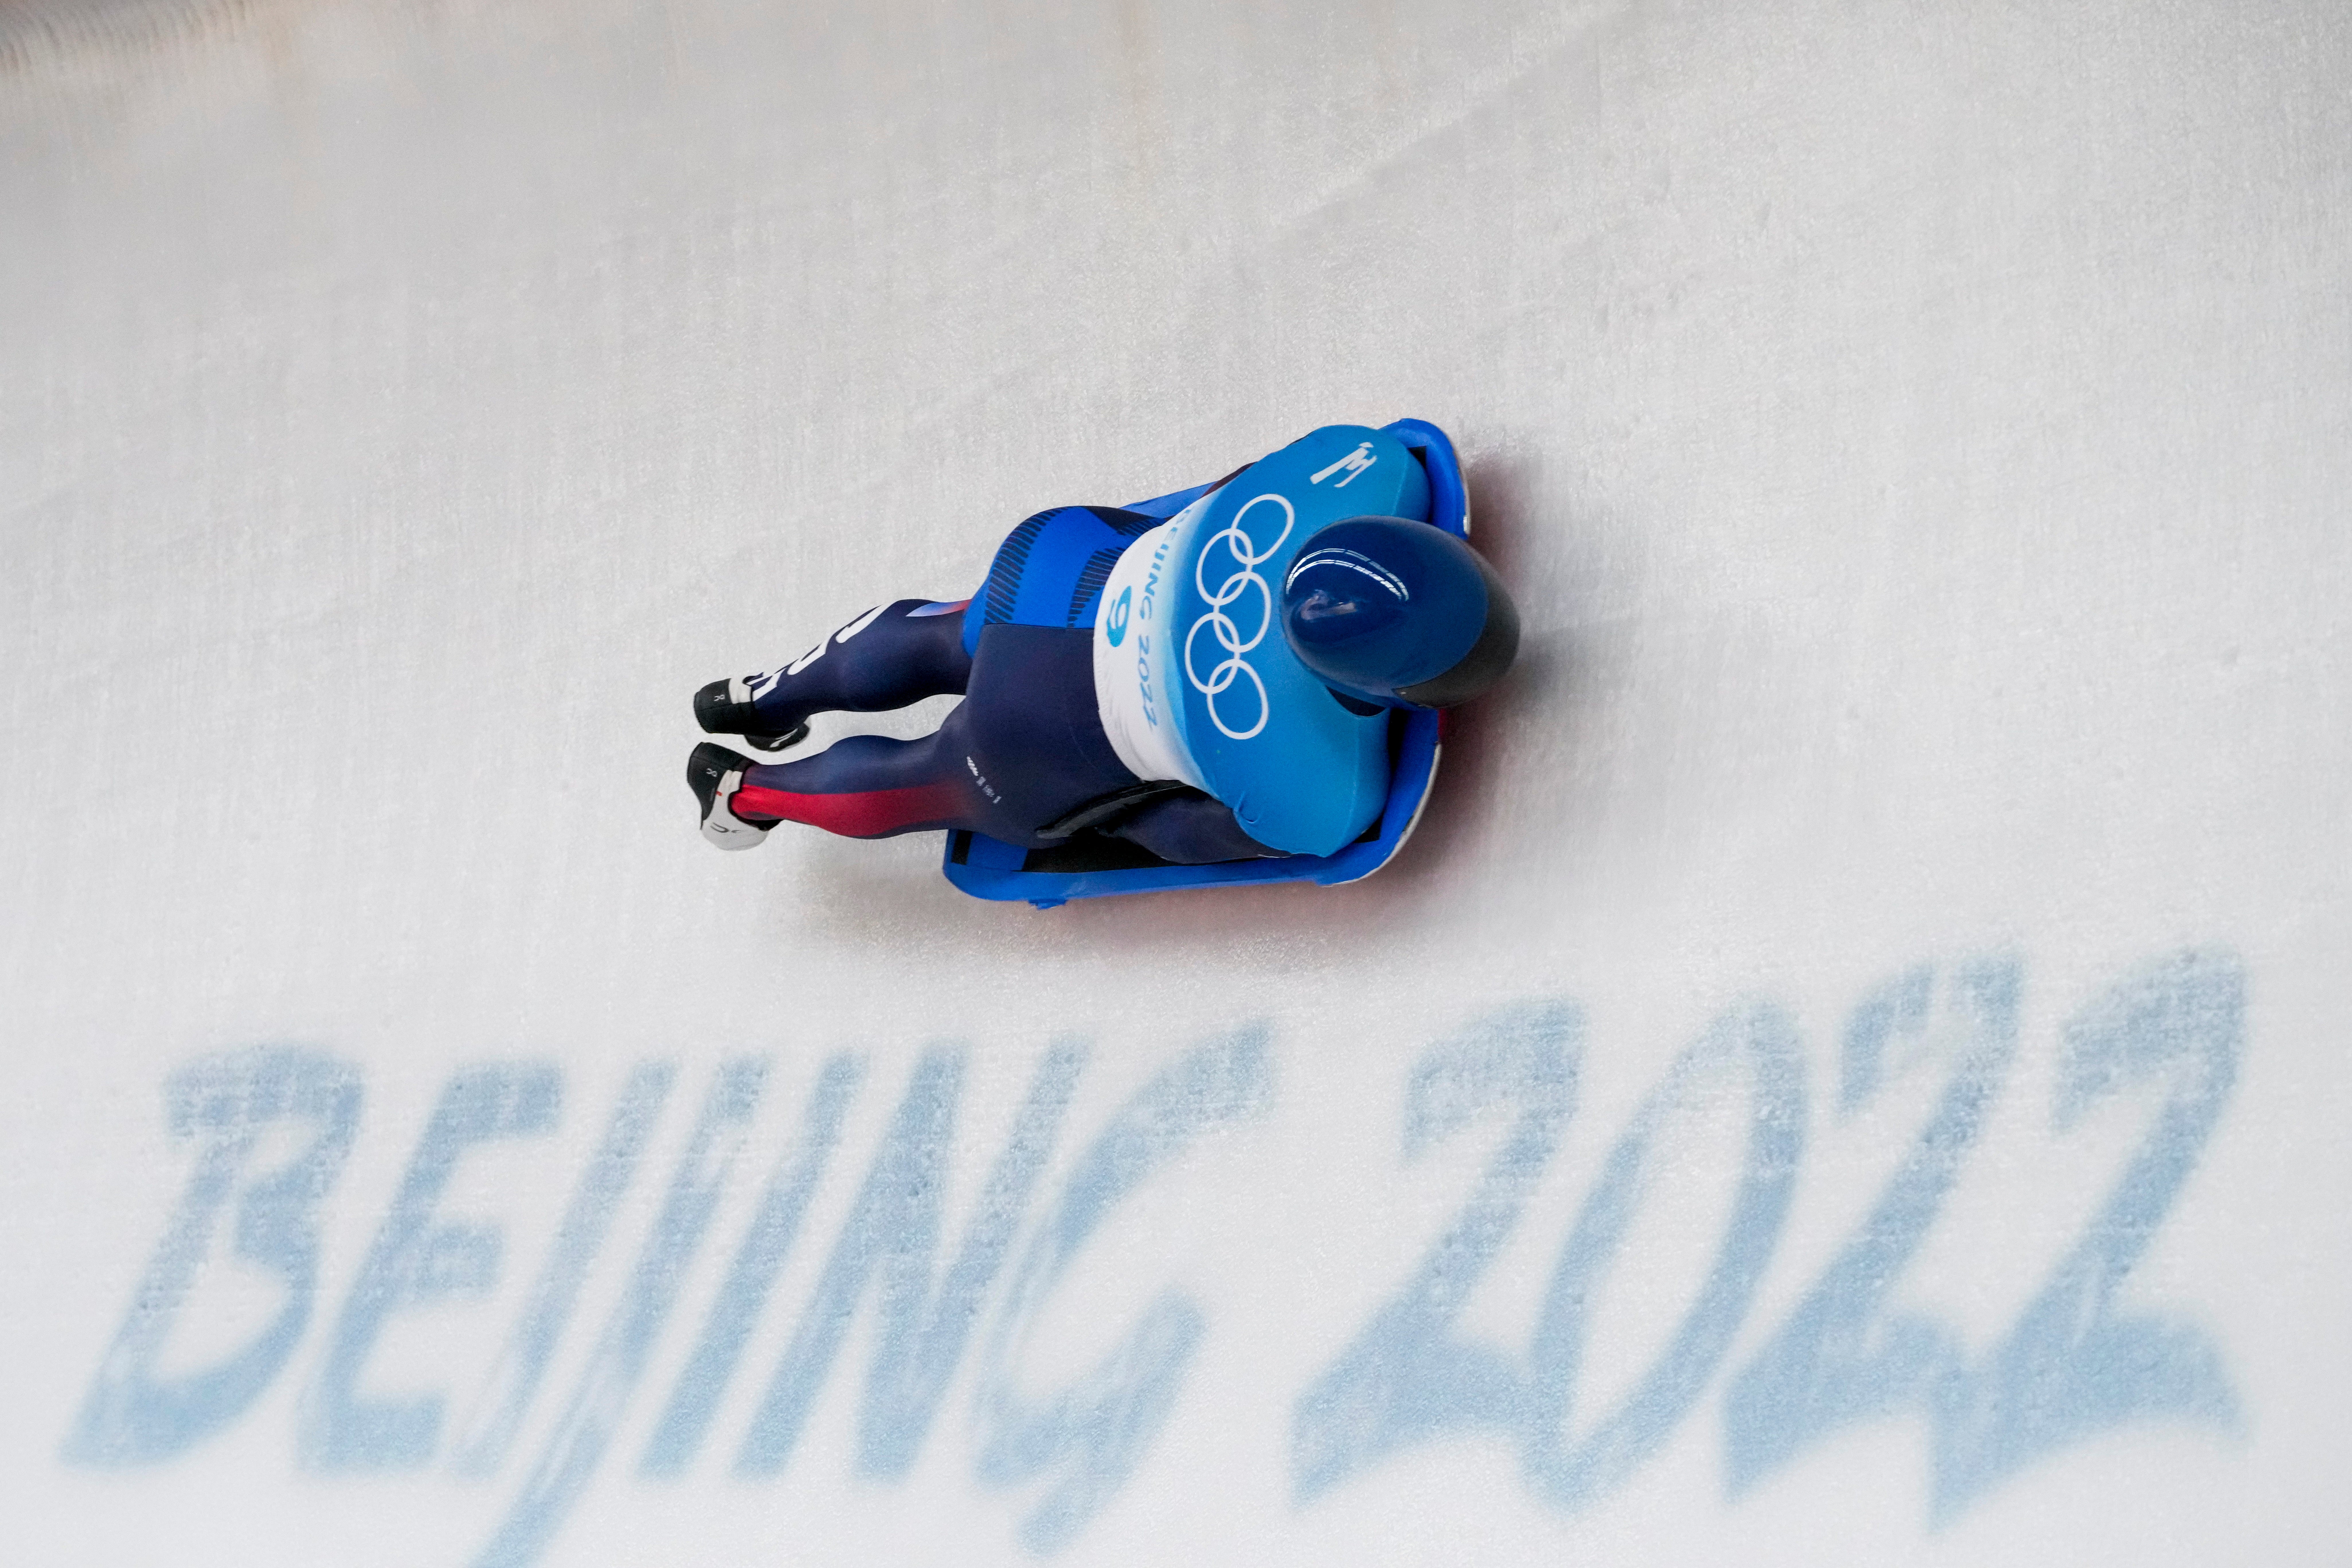 Matt Weston saw his medal hopes effectively ended in Beijing (Dmitri Lovetsky/AP)